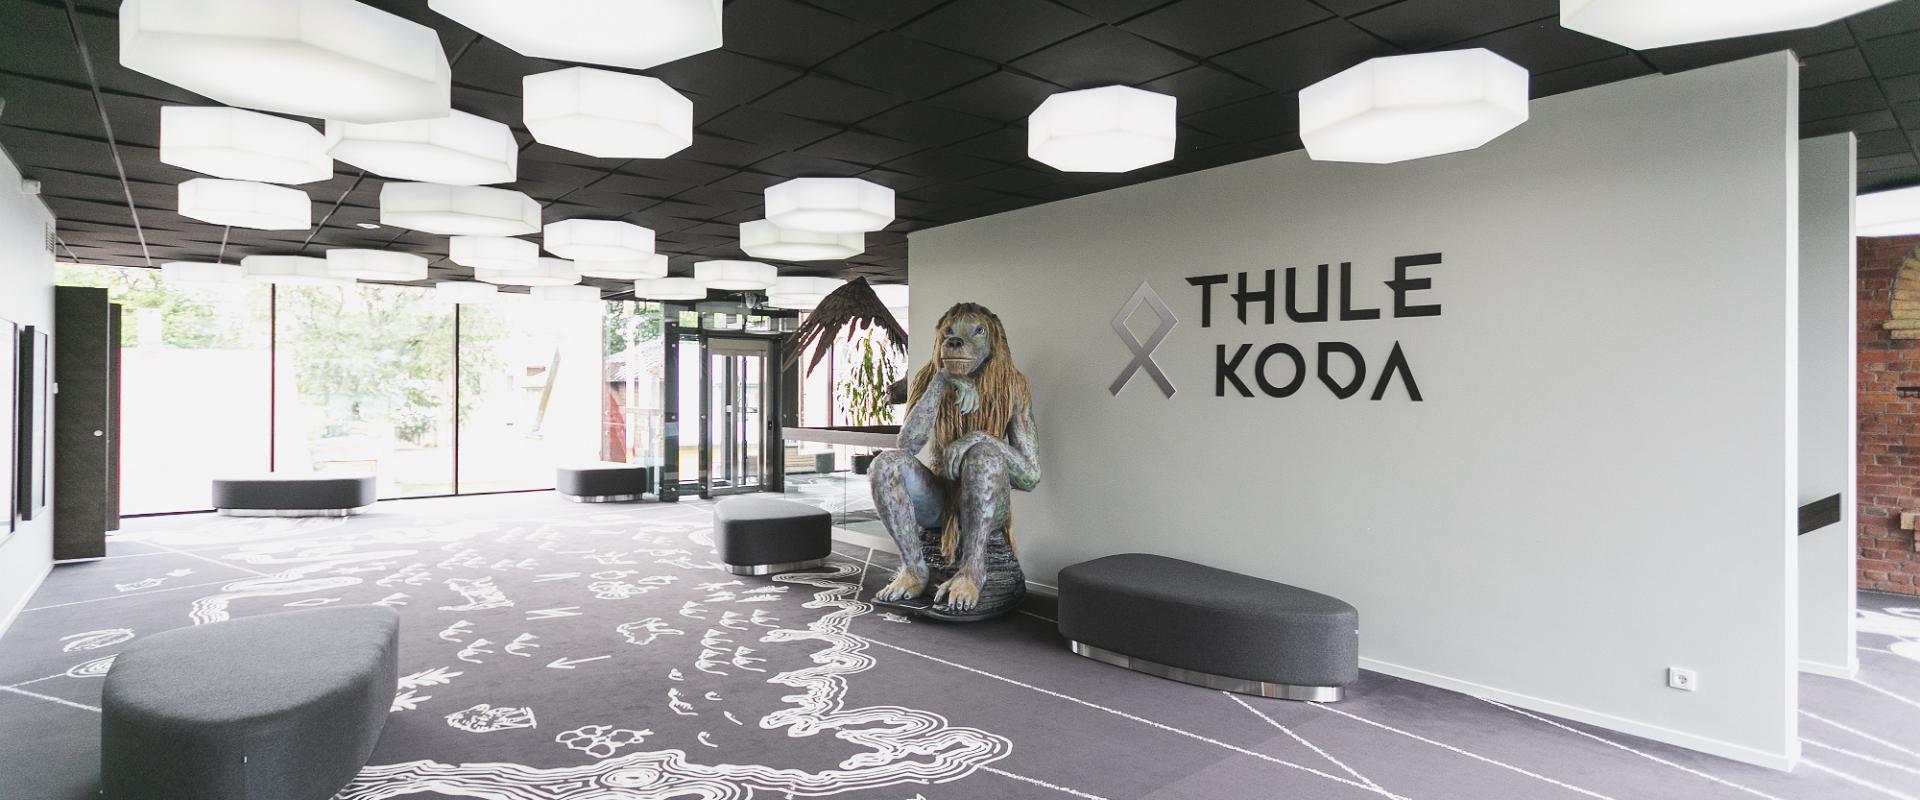 Erlebniszentrum für die ganze Familie – Thule Koda (dt.Thules Heim) in Kuressaare (dt. Arensburg)